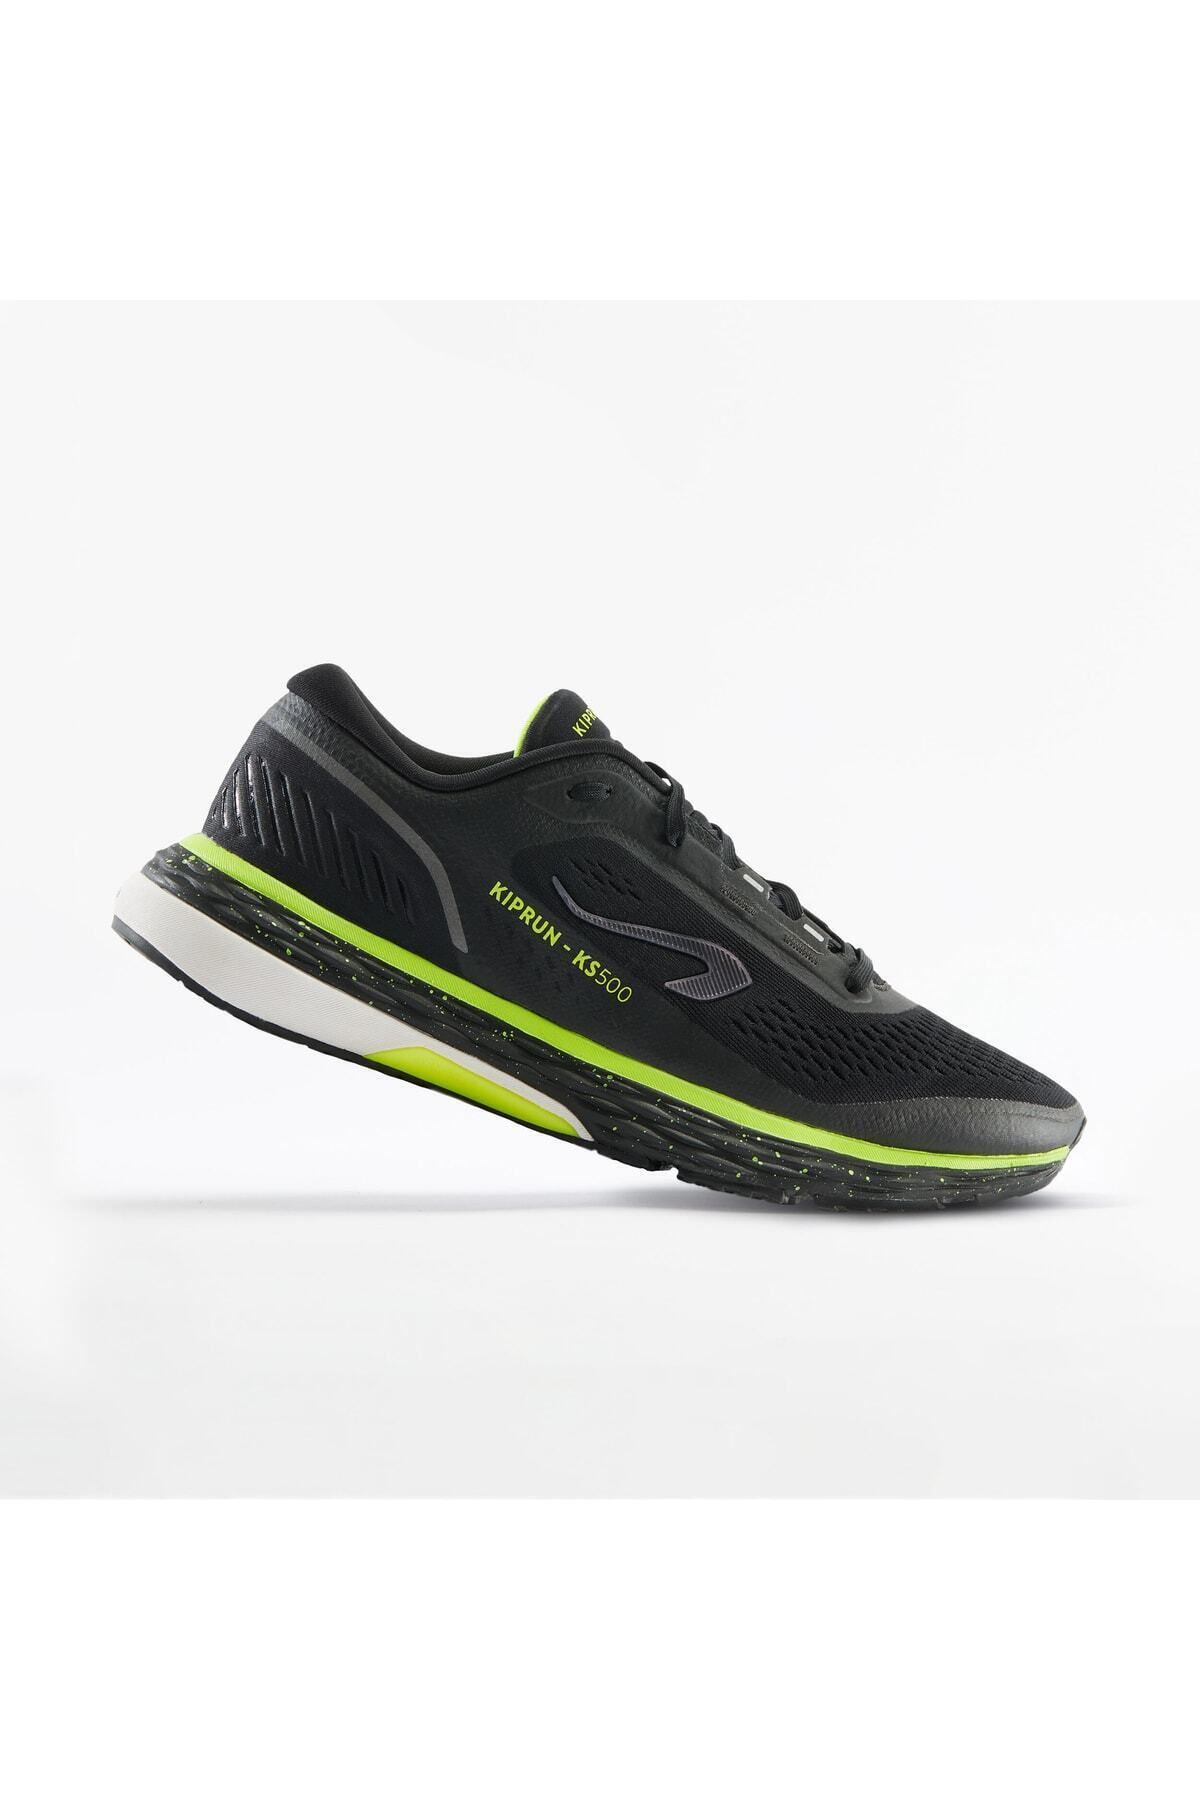 Decathlon Kiprun Erkek Siyah Sarı Koşu Ayakkabısı / Yol Koşusu - Kıprun Ks500